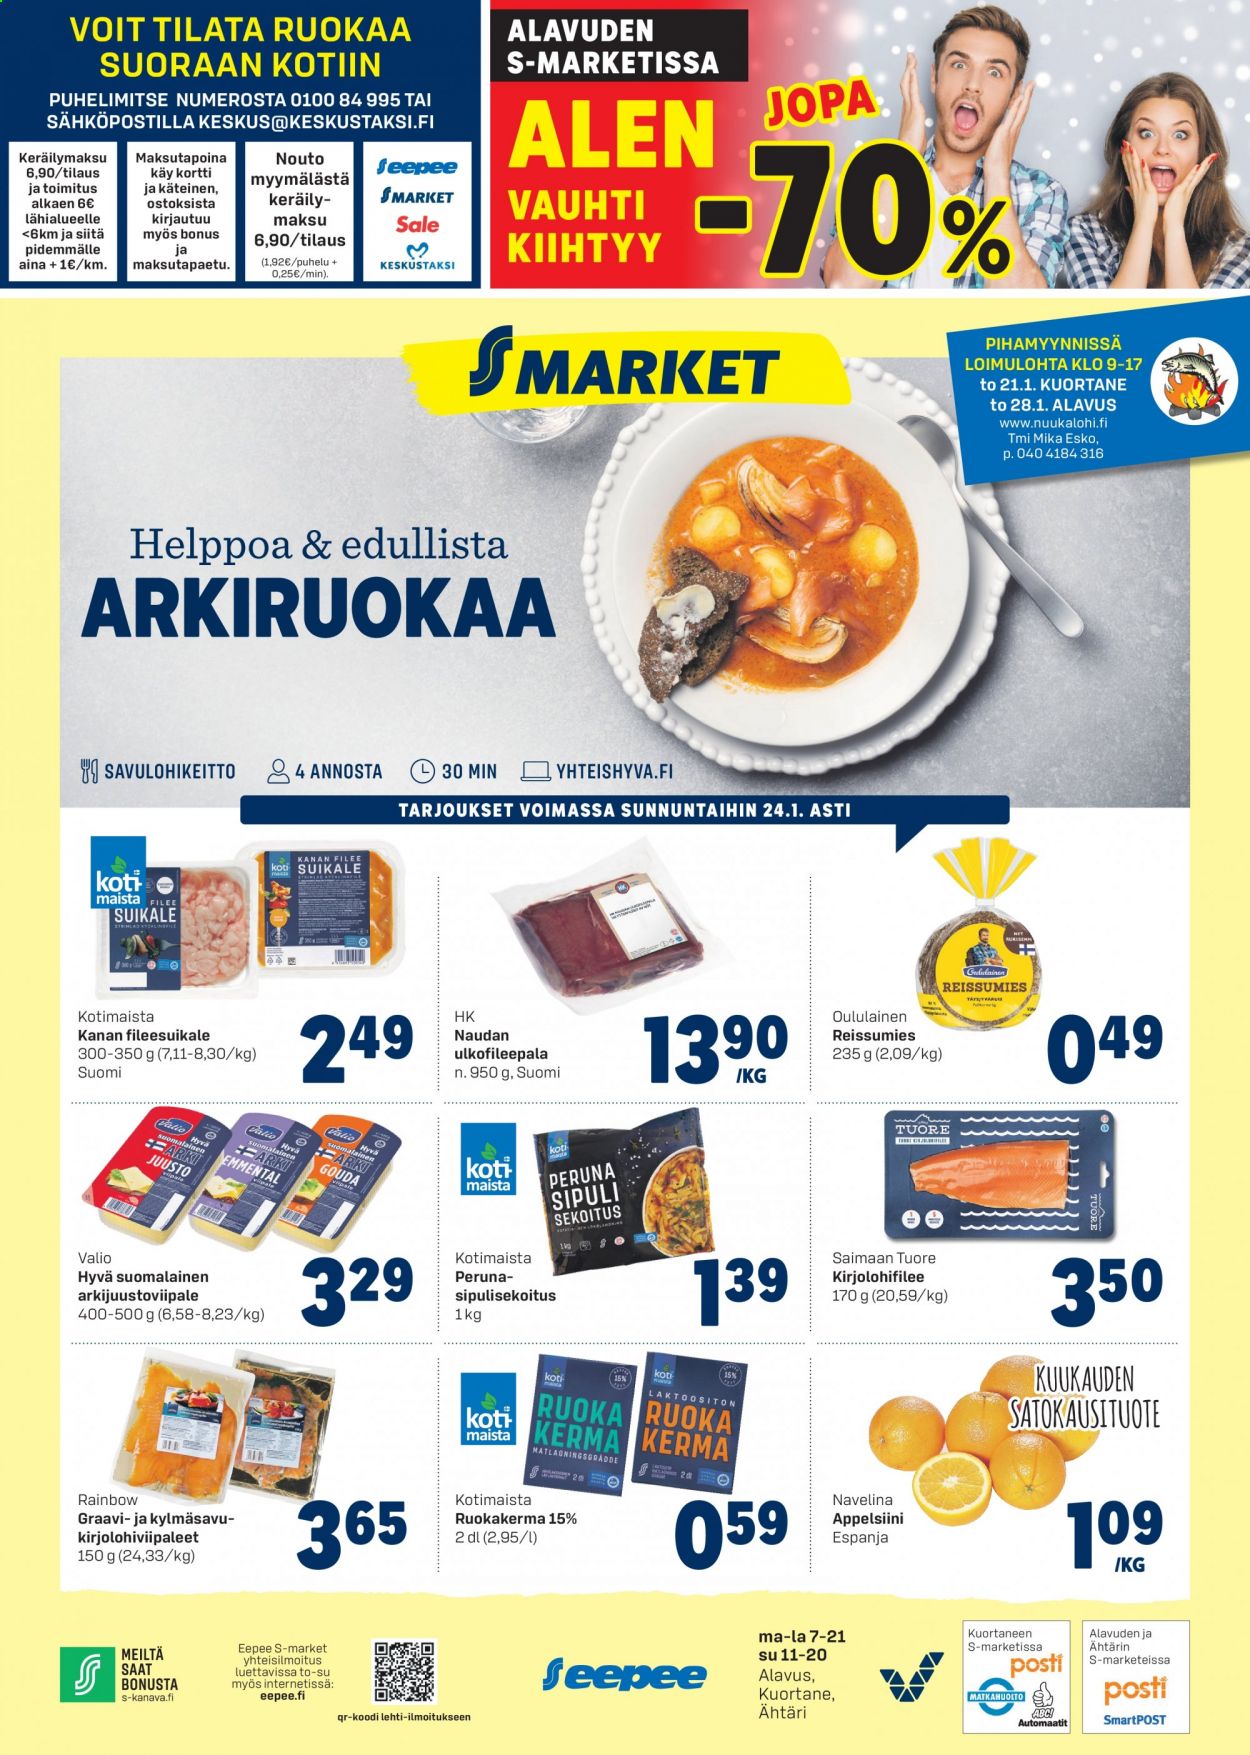 thumbnail - S-market tarjoukset  - 21.01.2021 - 24.01.2021 - Tarjoustuotteet - Oululainen, kanan fileesuikale, naudan, naudan ulkofilee. Sivu 1.